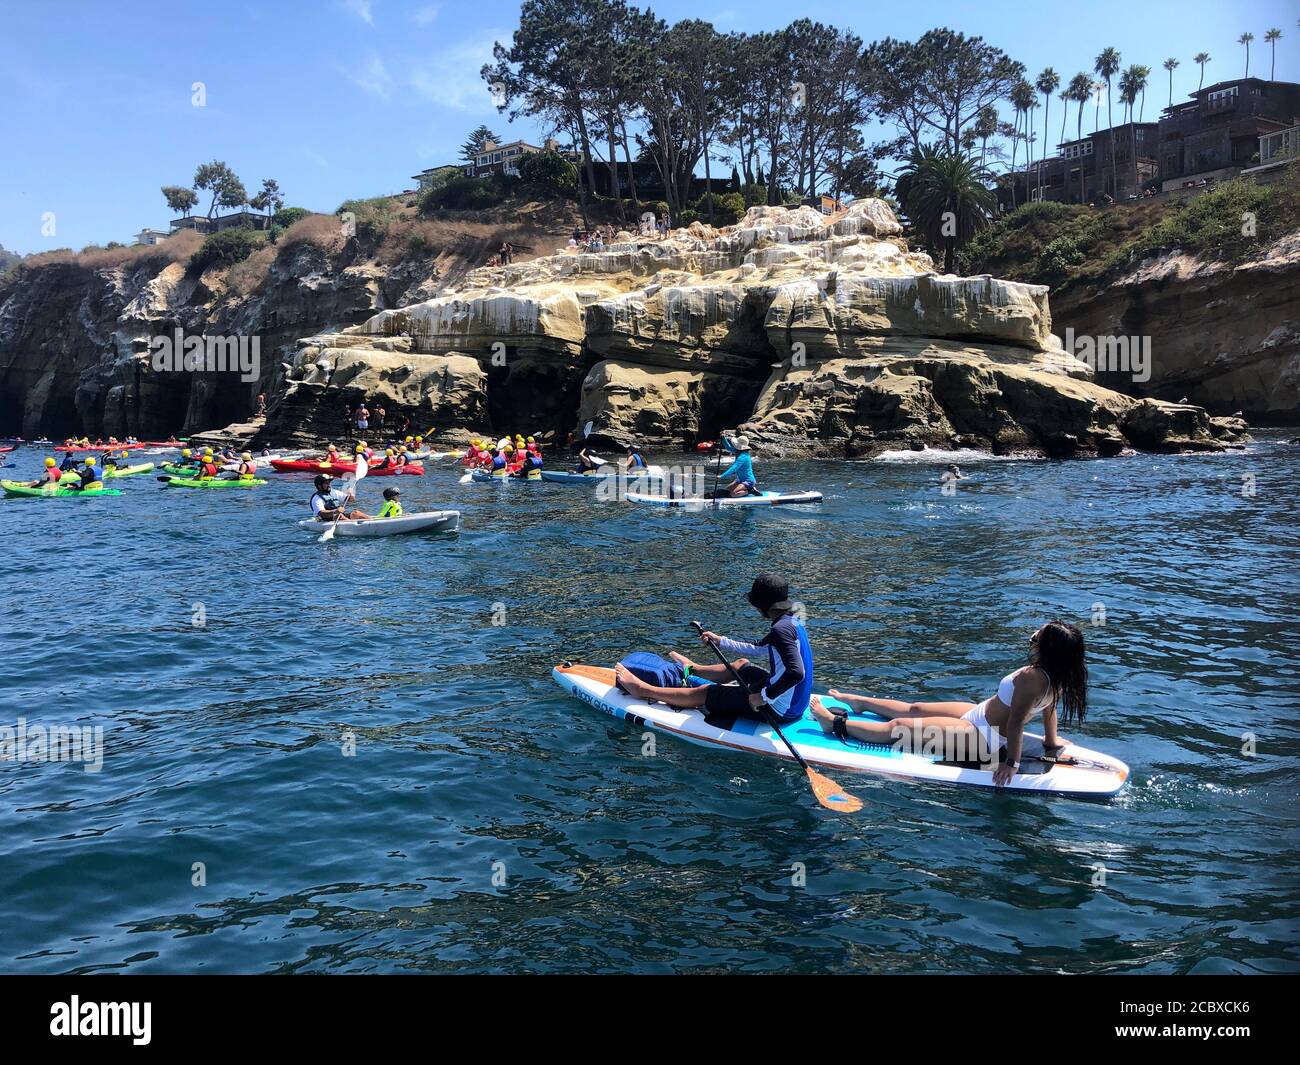 San Diego, Kalifornien, USA. August 2020. Leute paddeln Bord und Kajak in  La Jolla Cove während einer Rekordhitze. Viele Menschen haben  Outdoor-Aktivitäten während der Coronavirus-Pandemie aufgenommen, da viele  Indoor-Aktivitäten eingestellt wurden ...